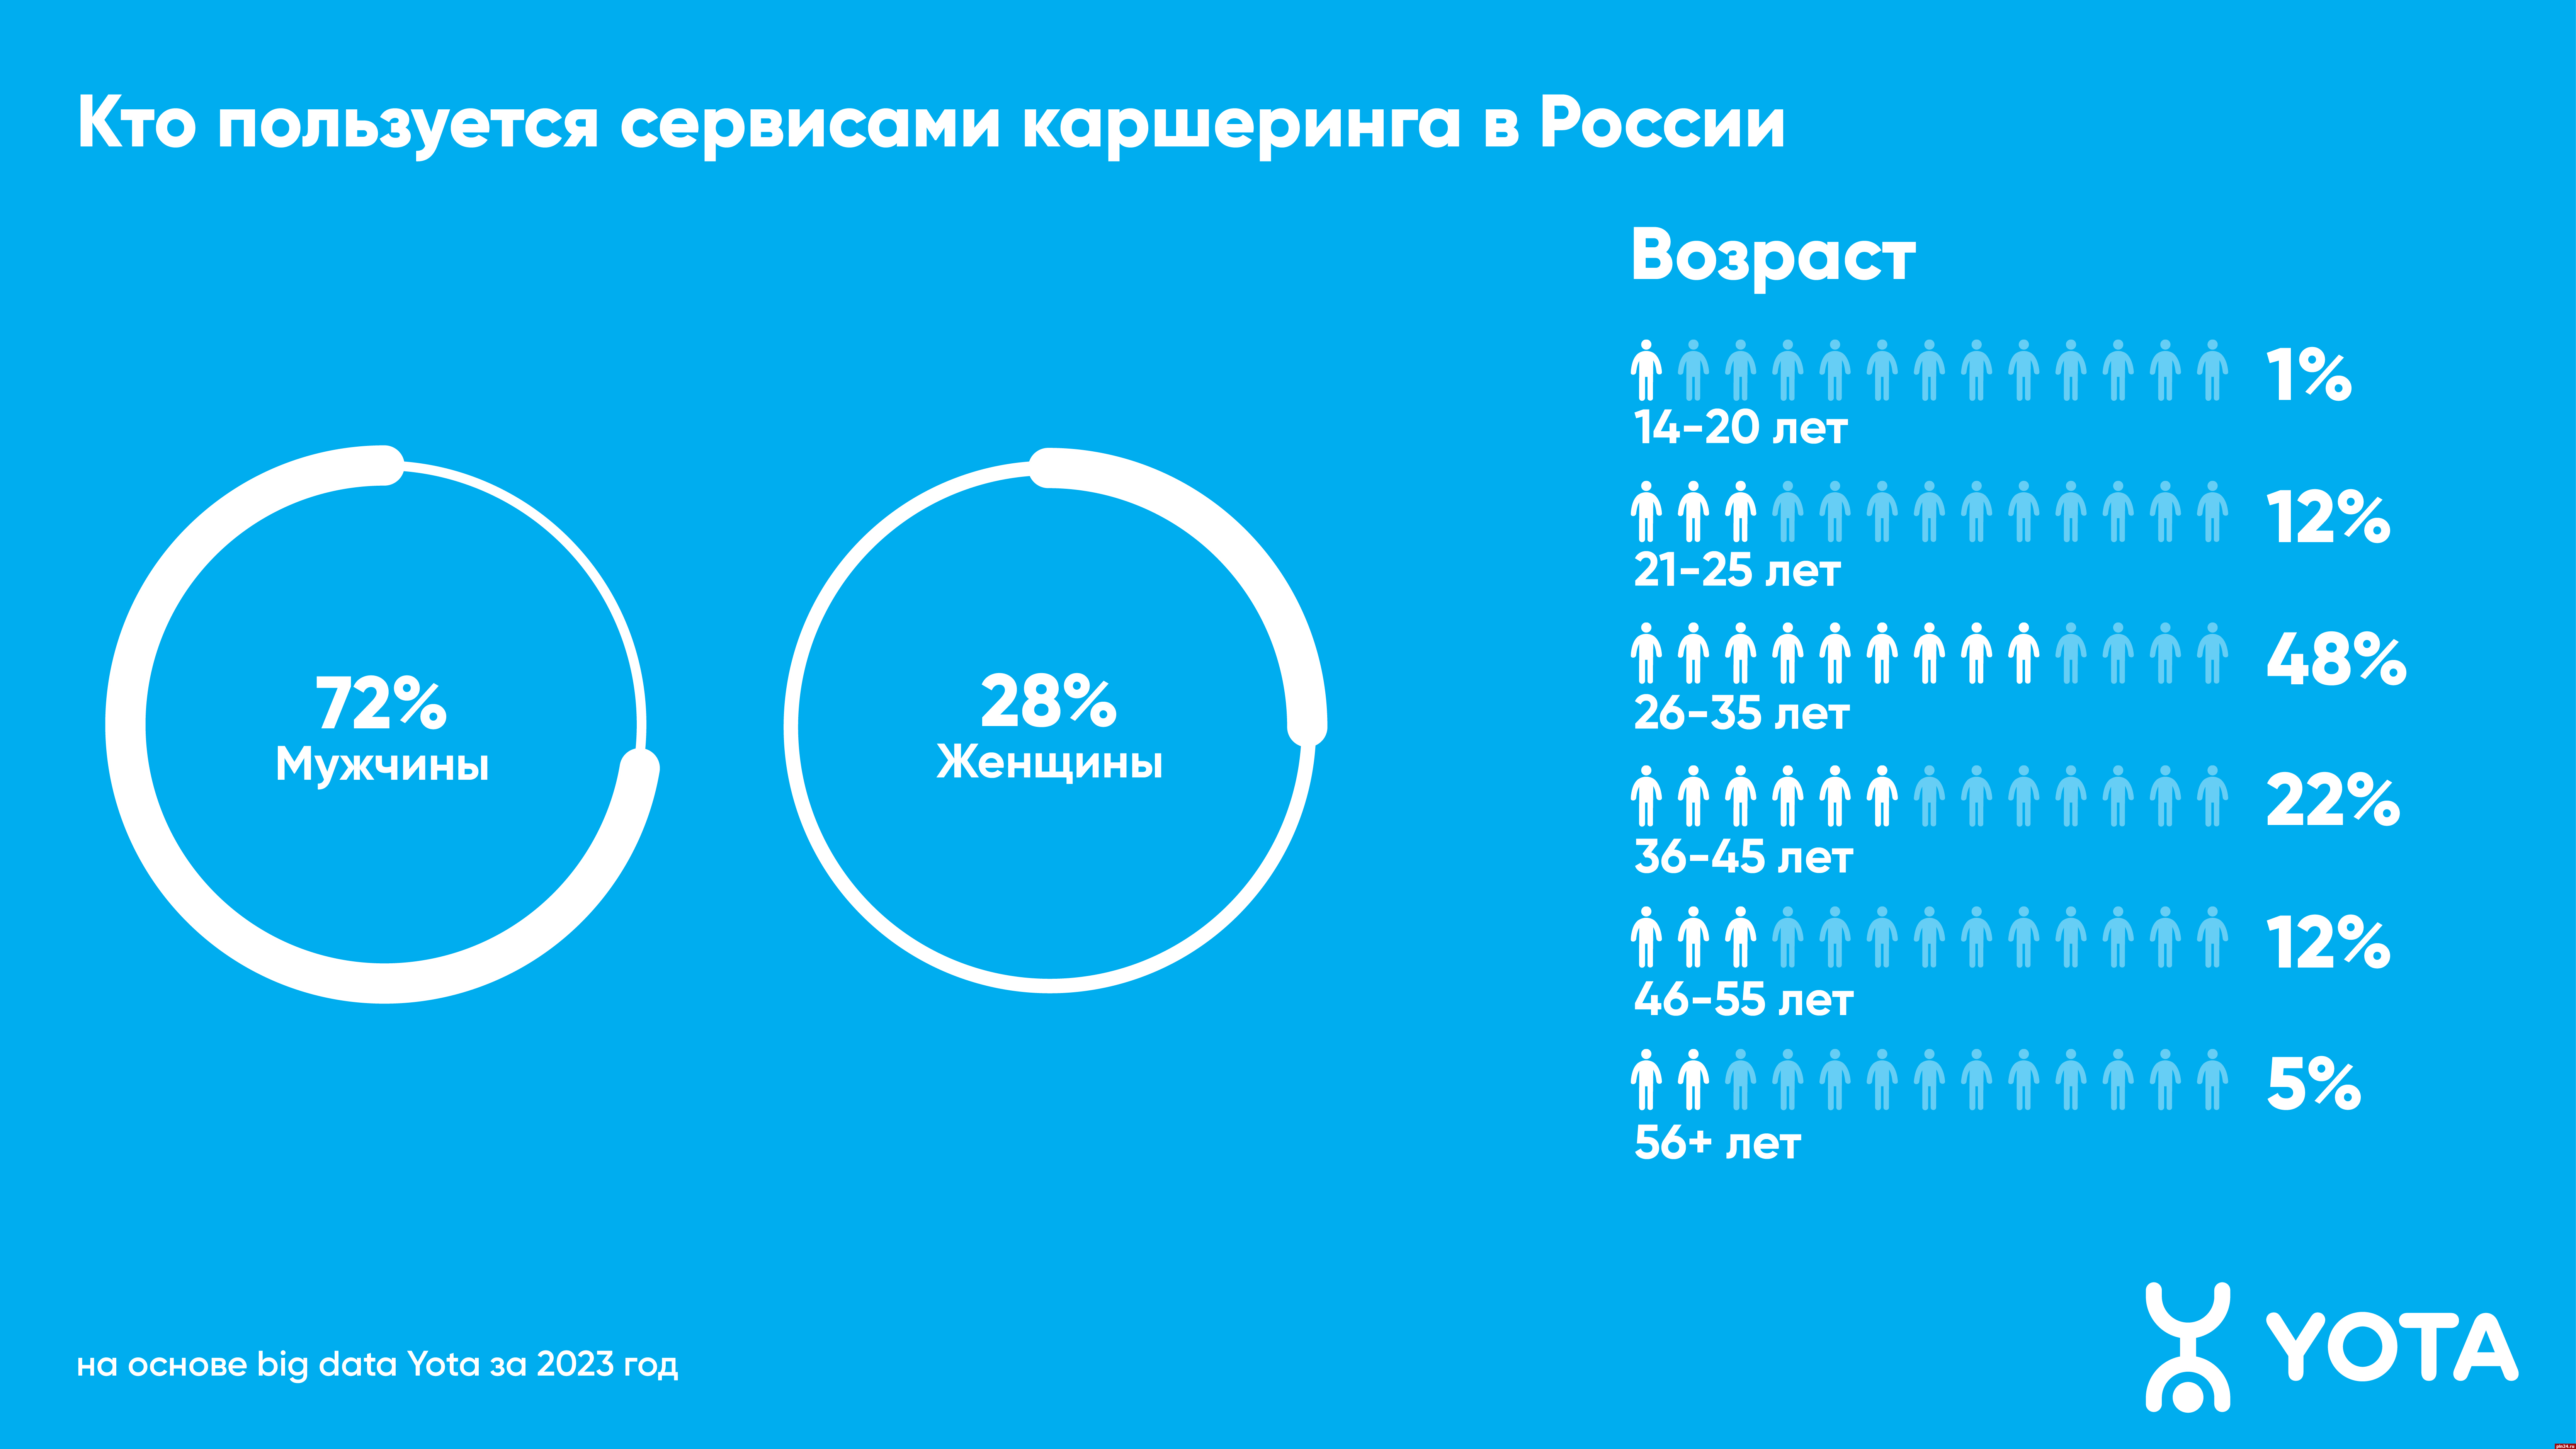 Жители Пскова во время командировок и отпусков стали активнее пользоваться каршерингом